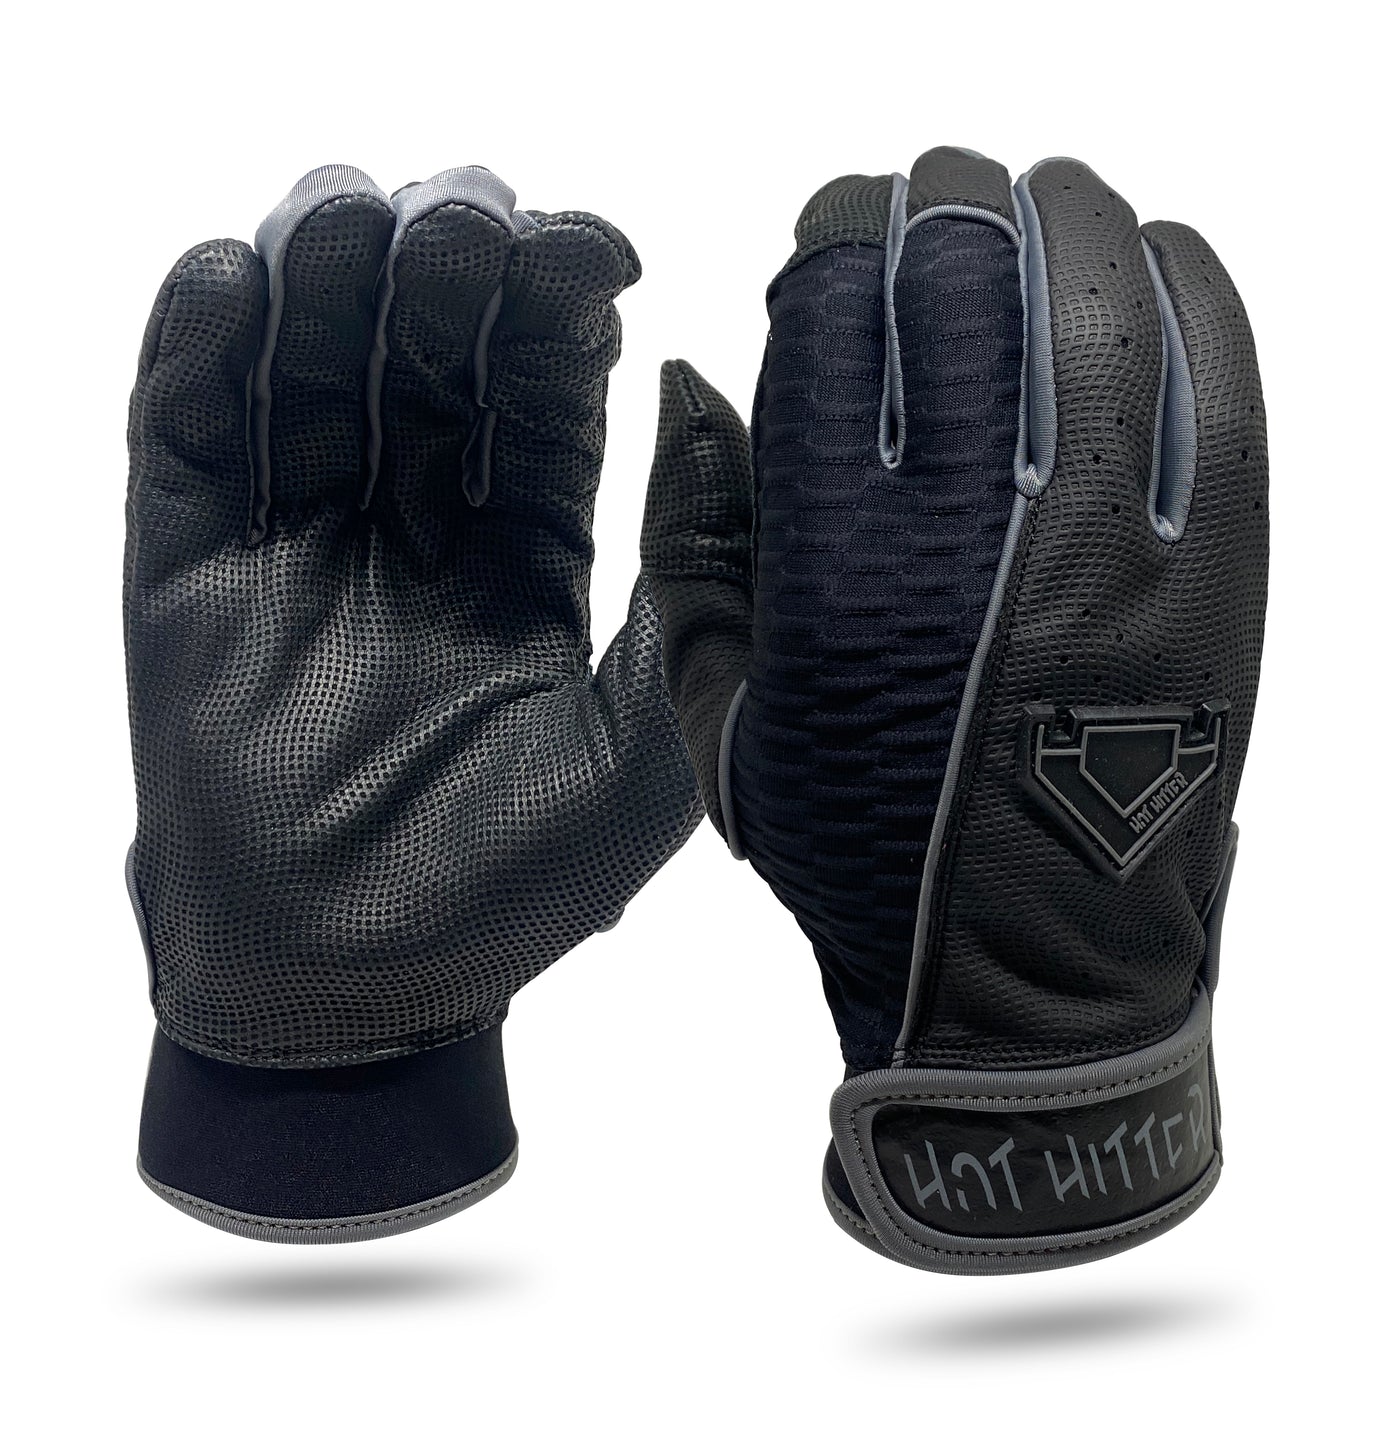 Extra Innings Batting Gloves Black & Grey